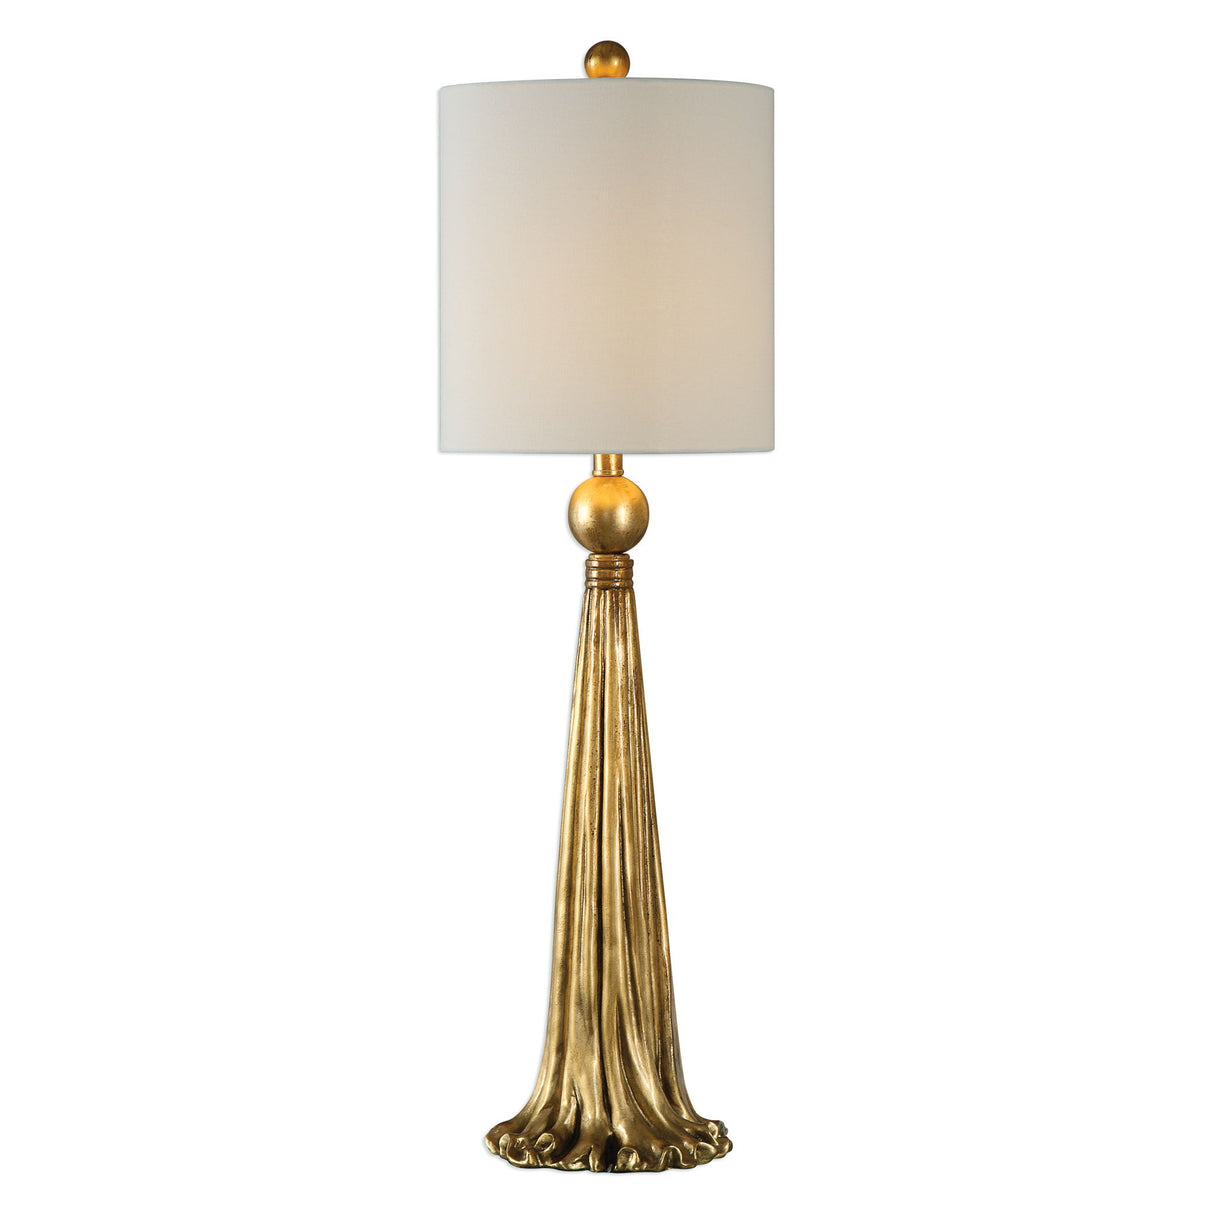 Paravani - Metallic Lamp - Gold